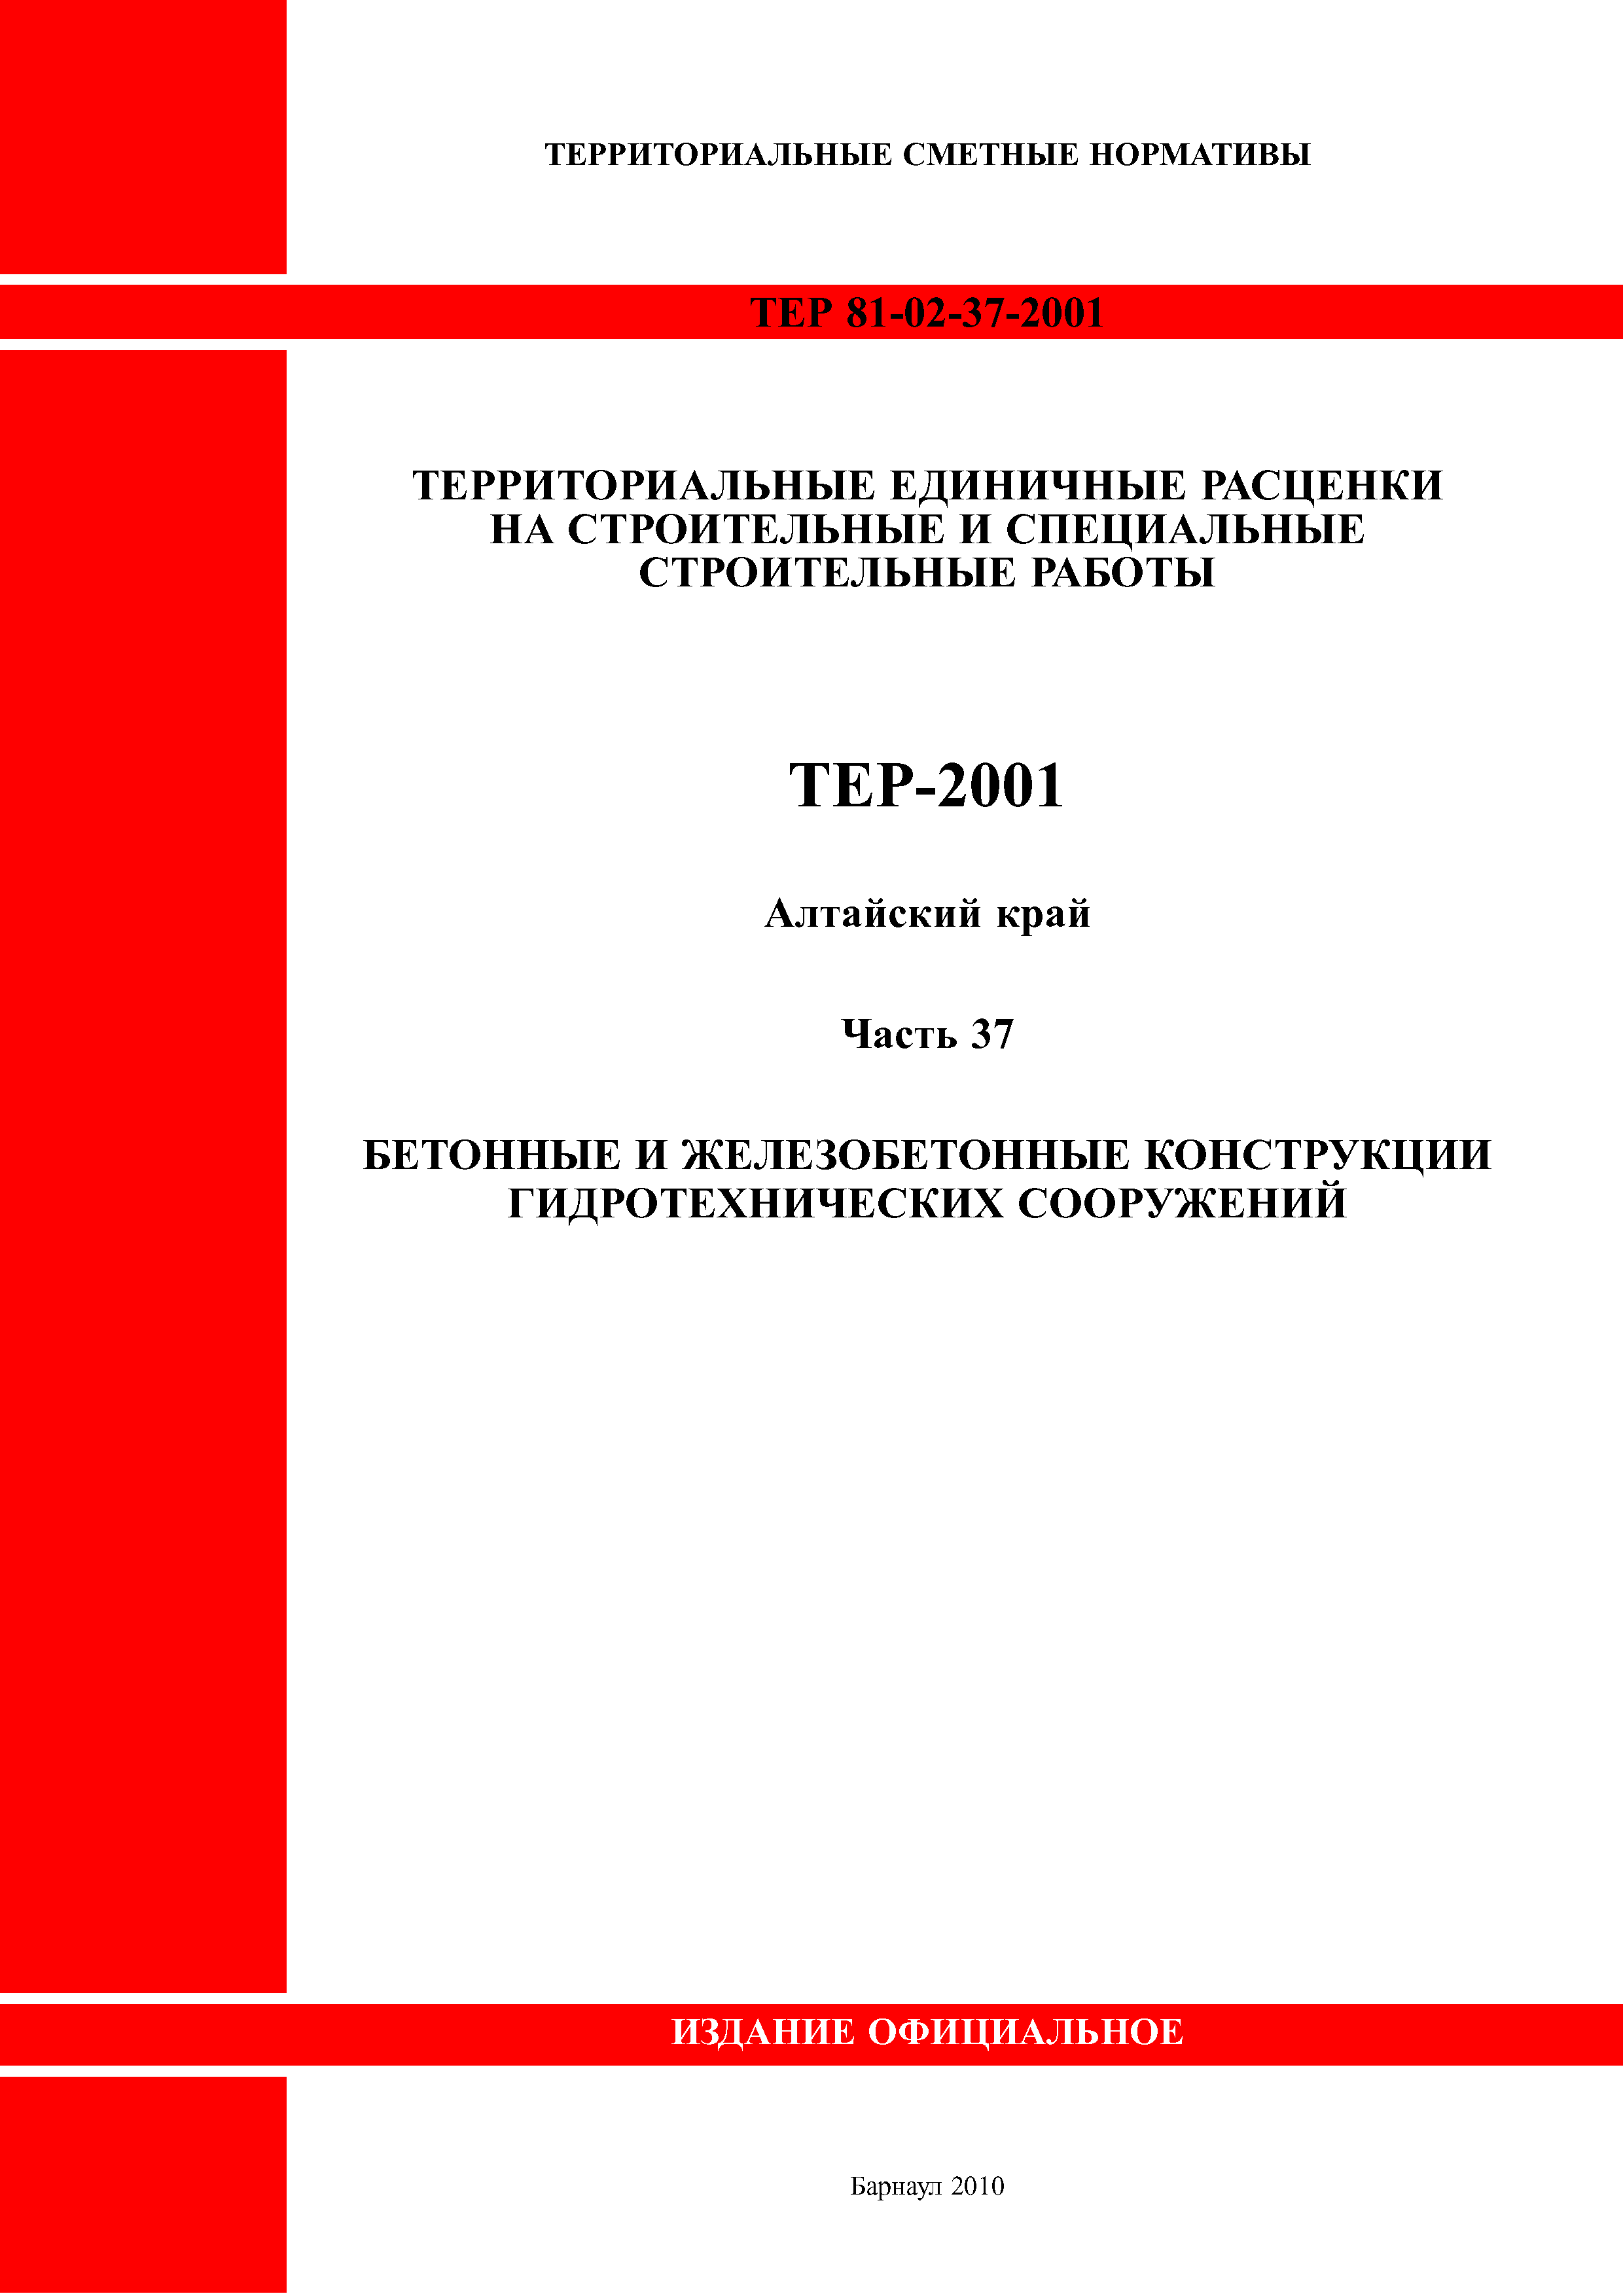 ТЕР Алтайский край 2001-37